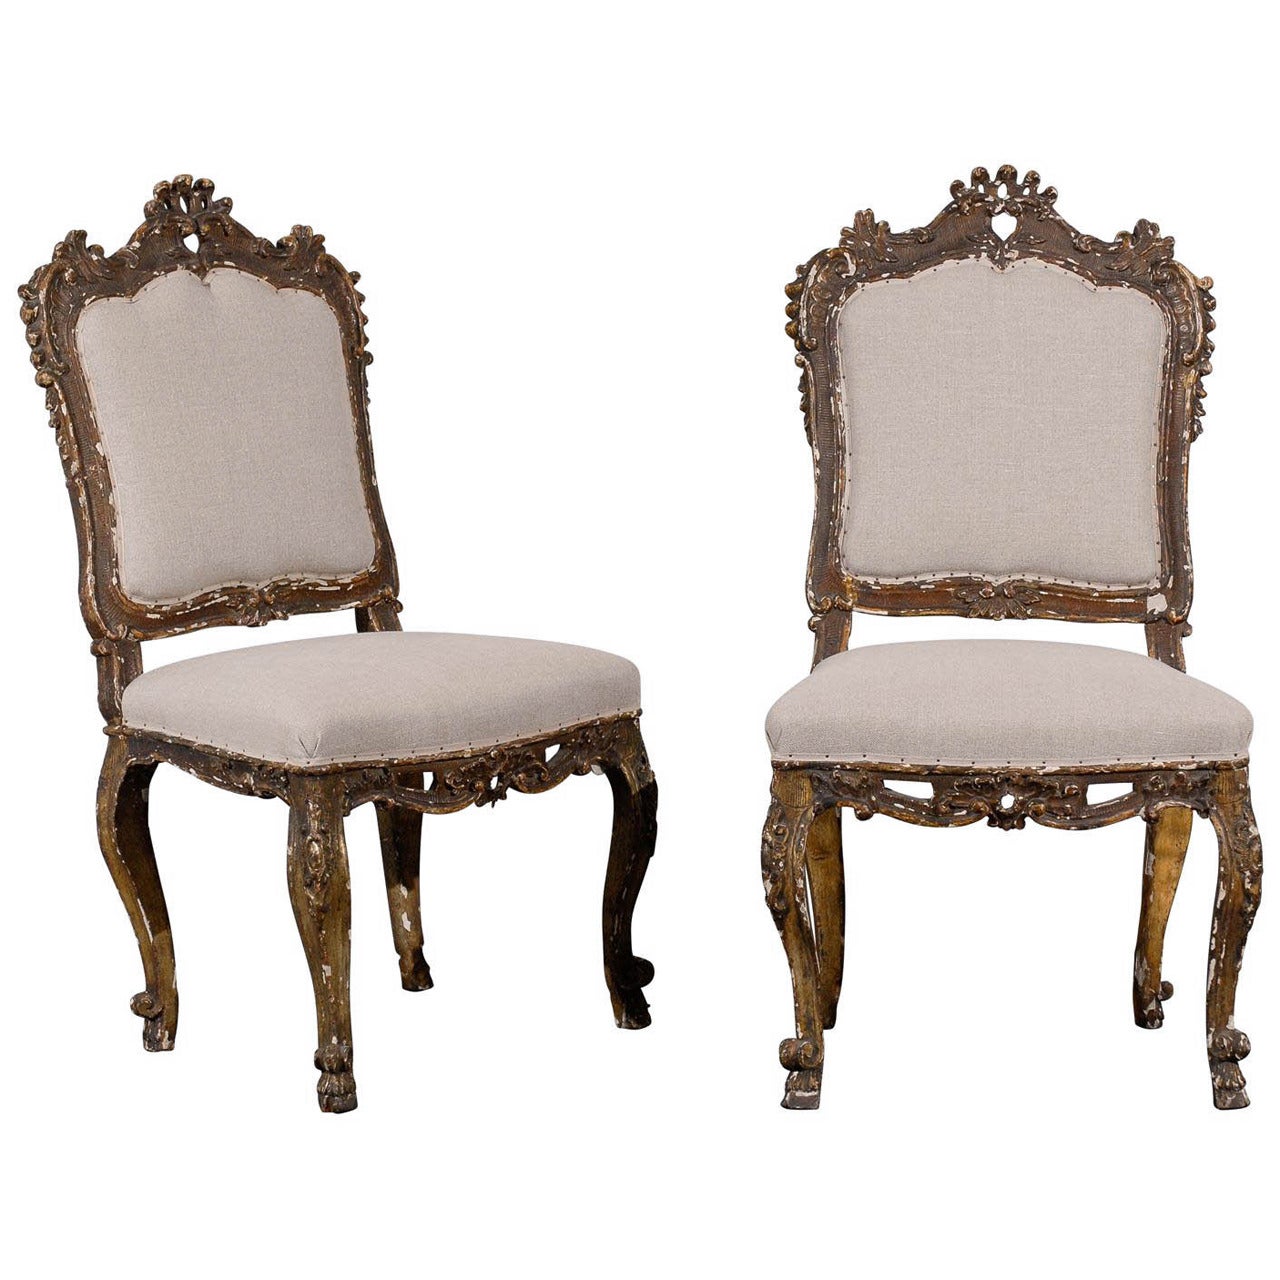 Paar italienische verschnörkelte Beistellstühle im venezianischen Stil des 18. Jahrhunderts